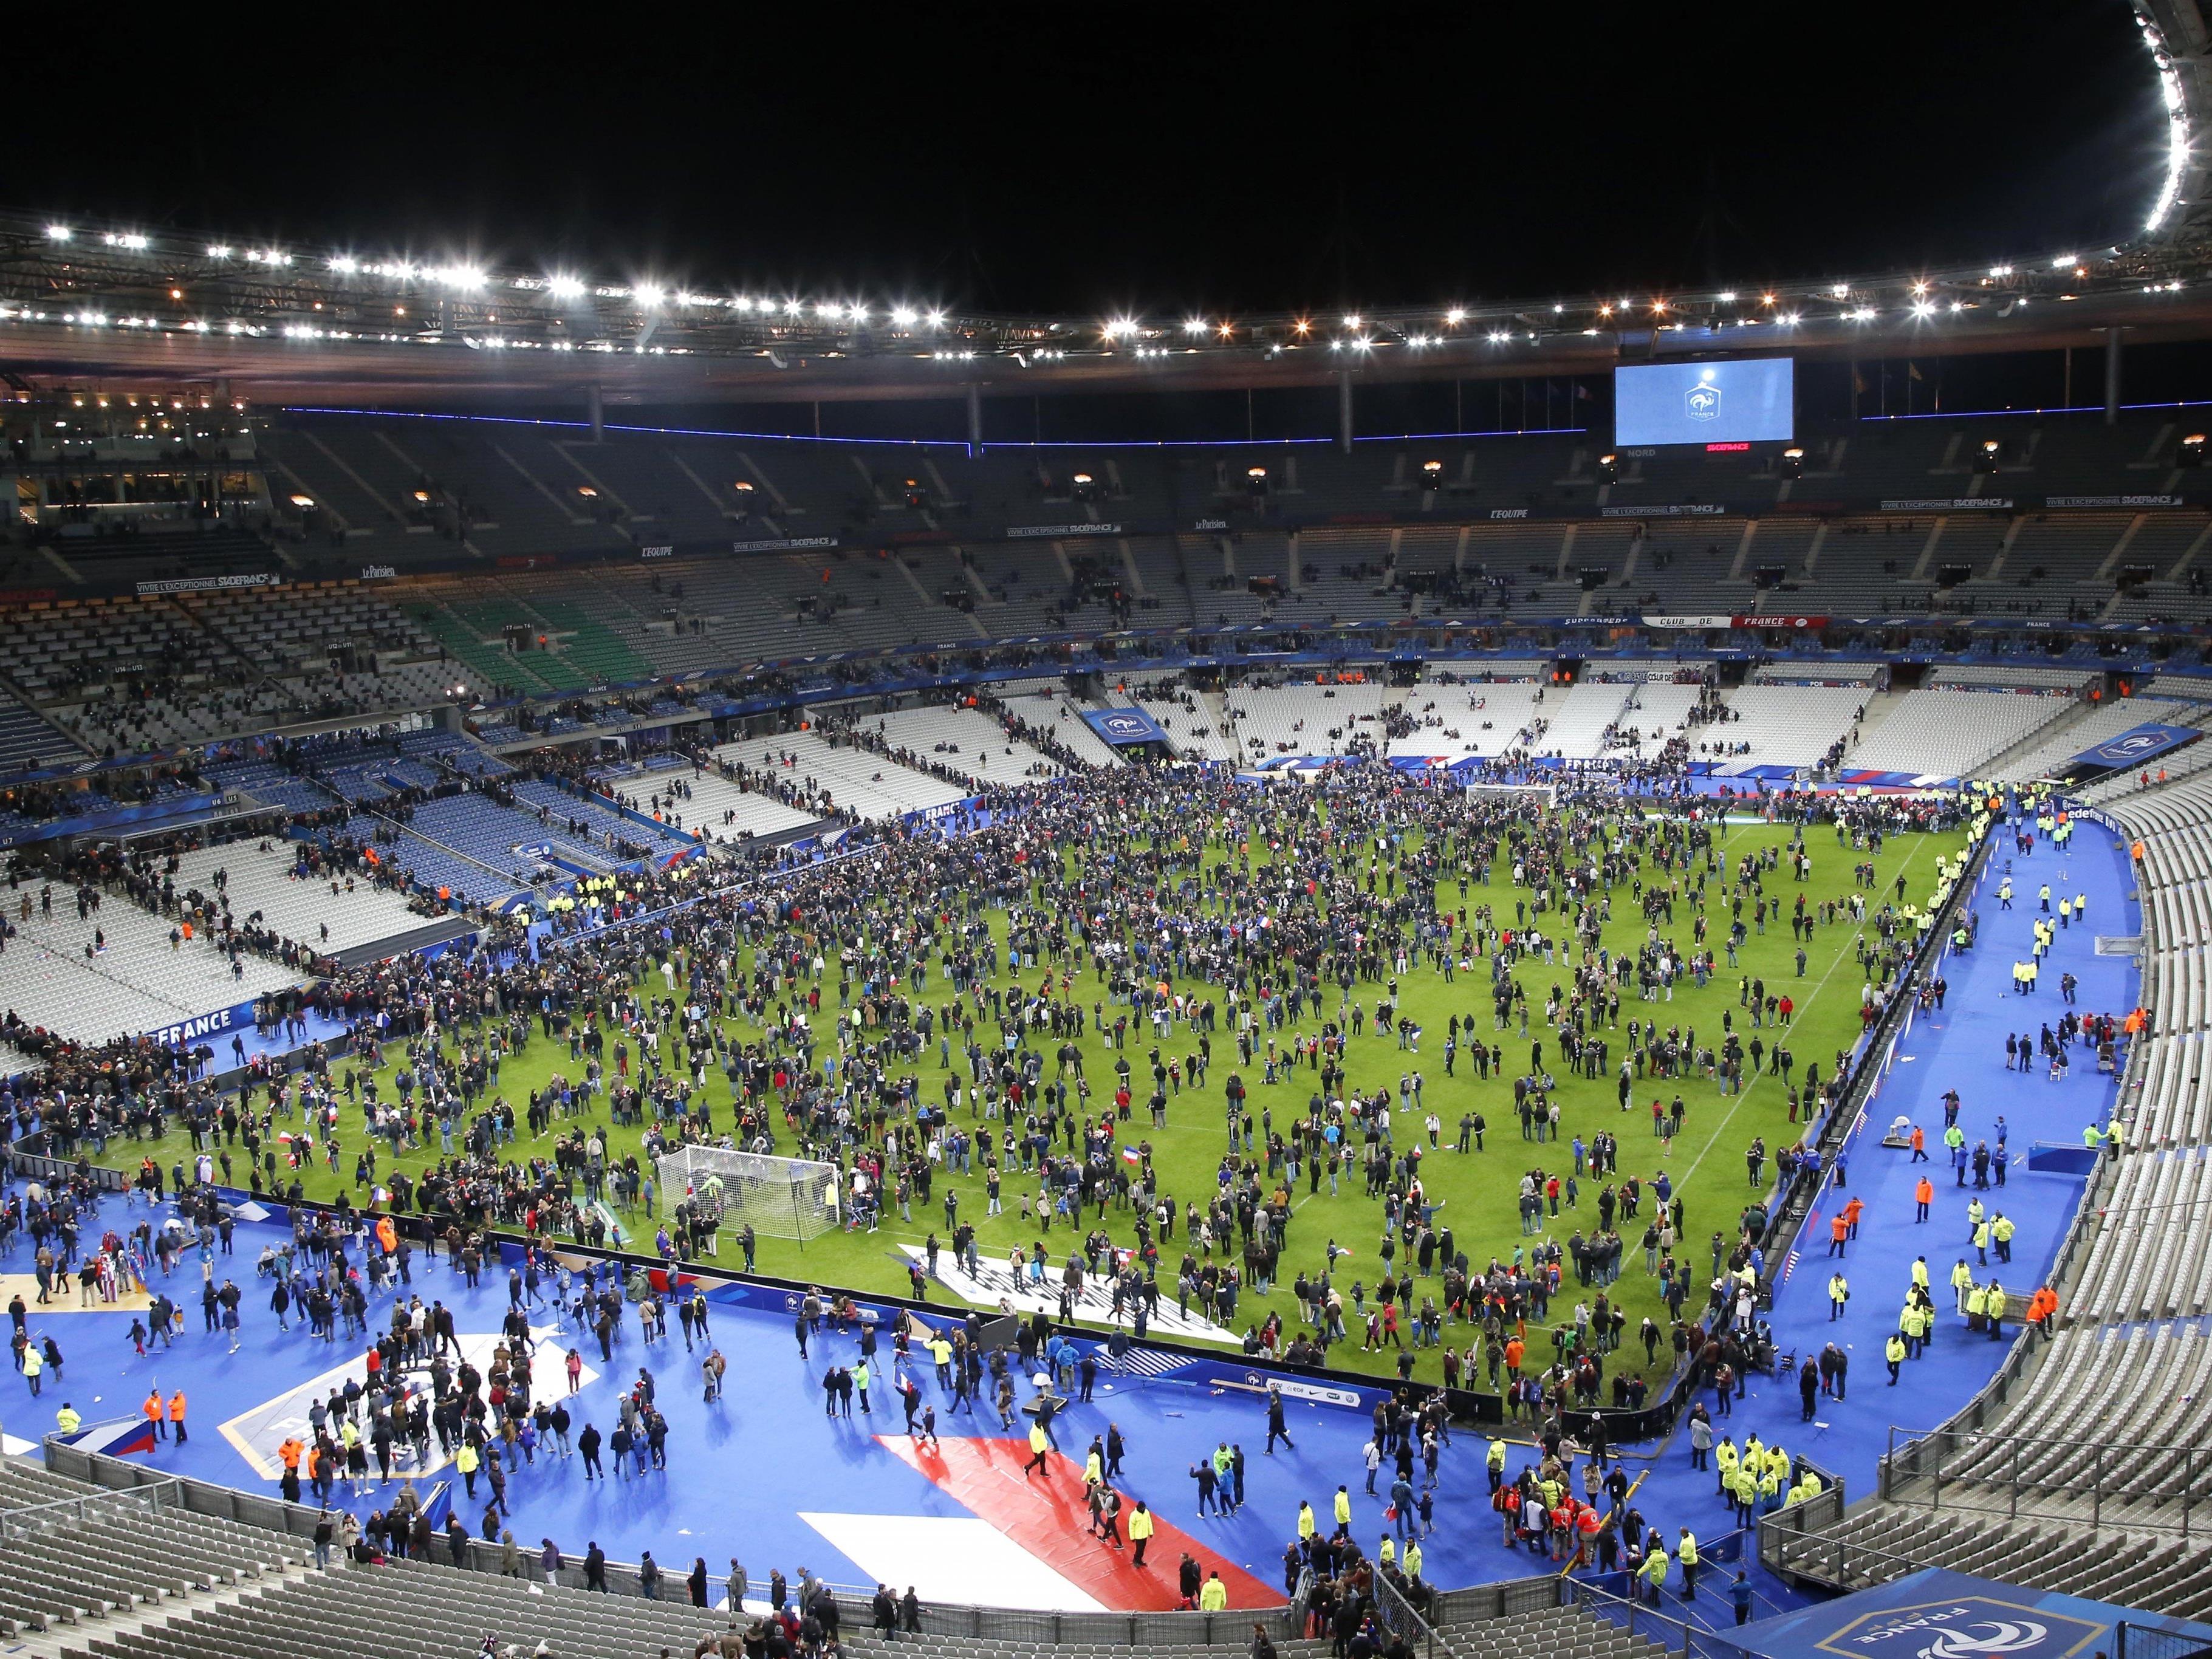 Zumindest einer der Paris-Attentäter versuchte, ins Stade de France zu gelangen, um dort eine Bombe zu zünden.